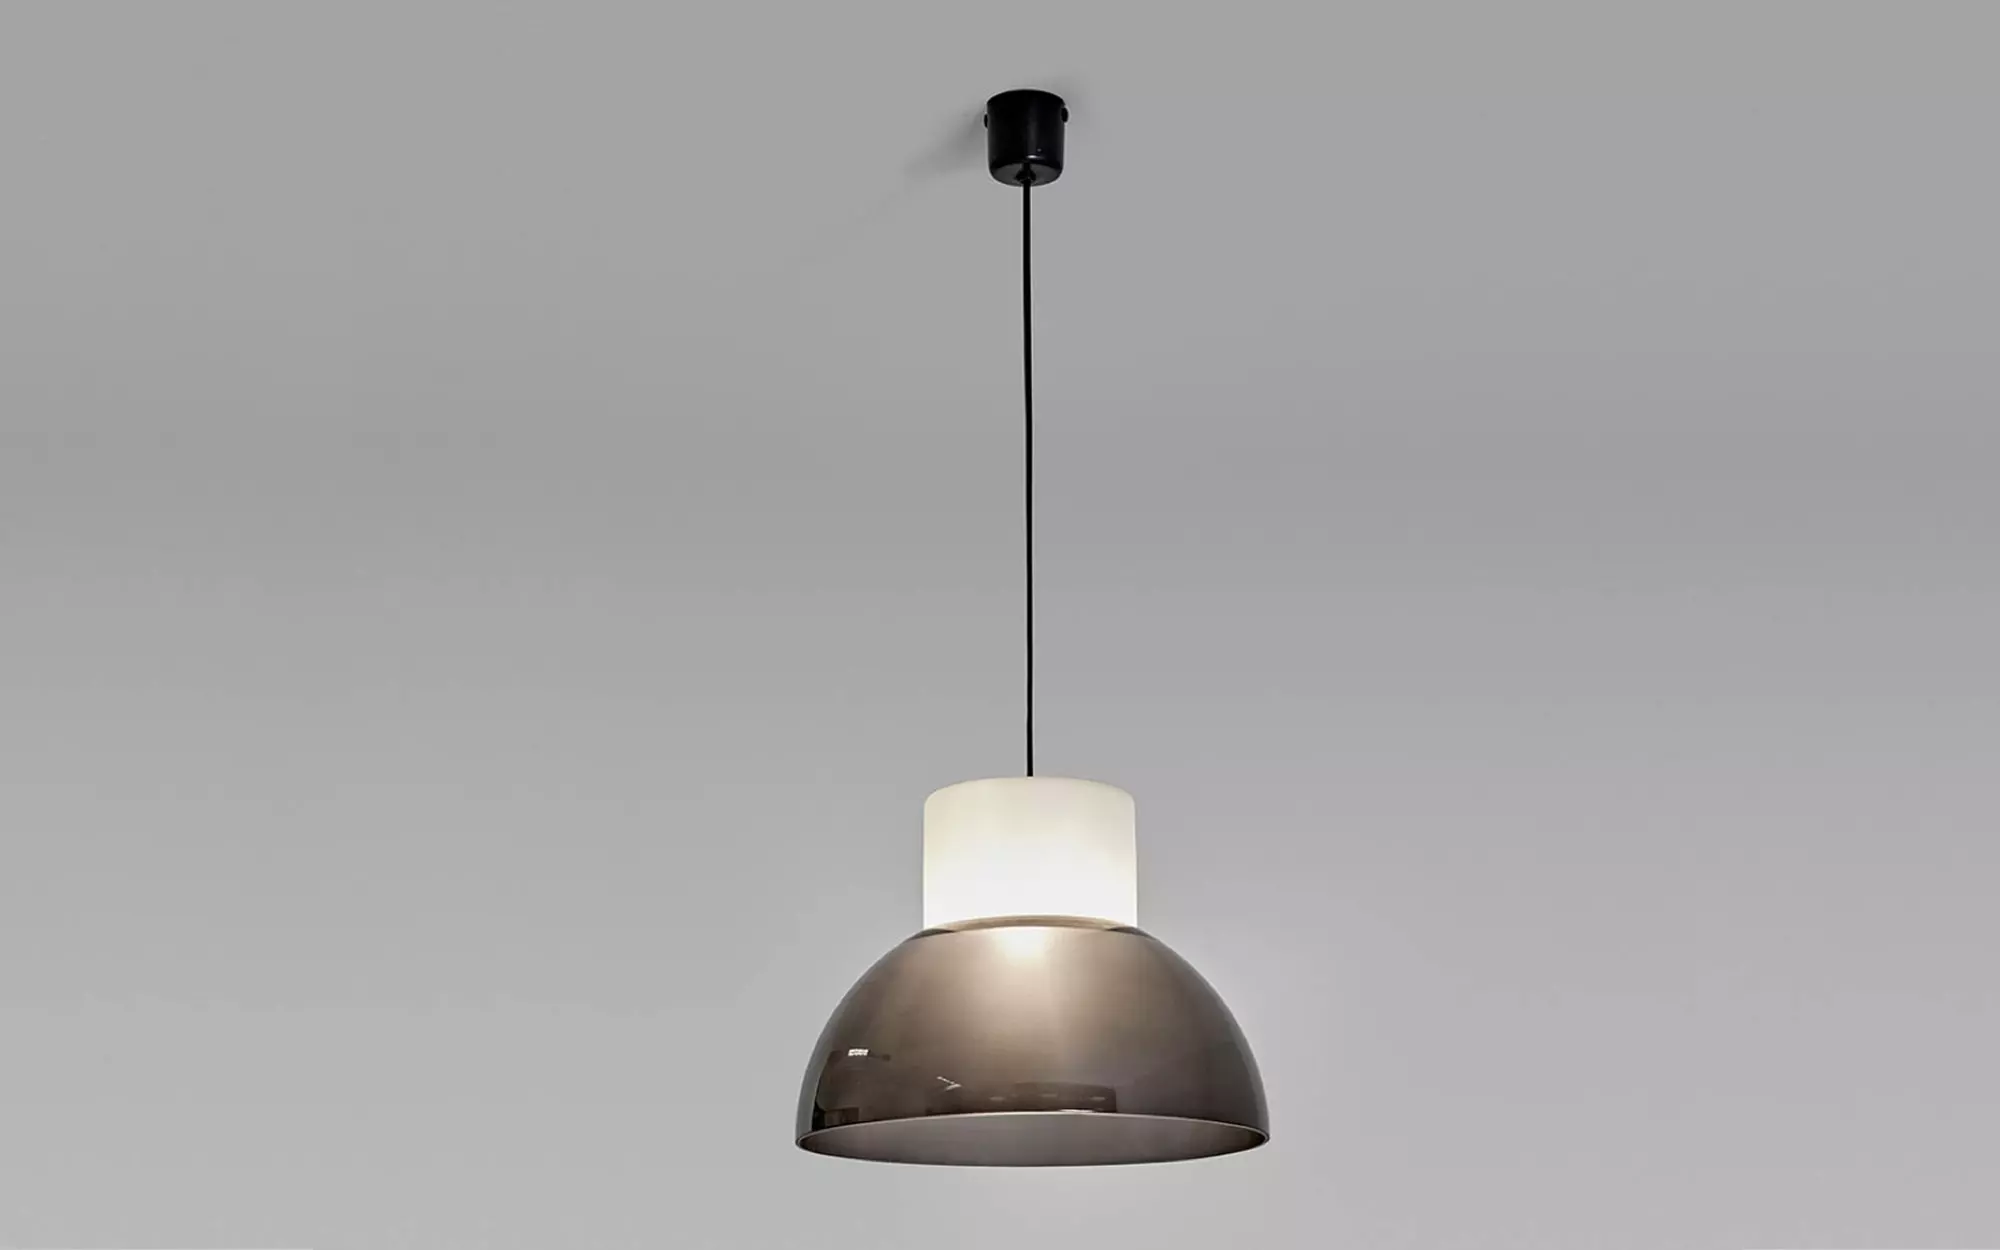 2103 (grey) - Gino Sarfatti - Table light - Galerie kreo